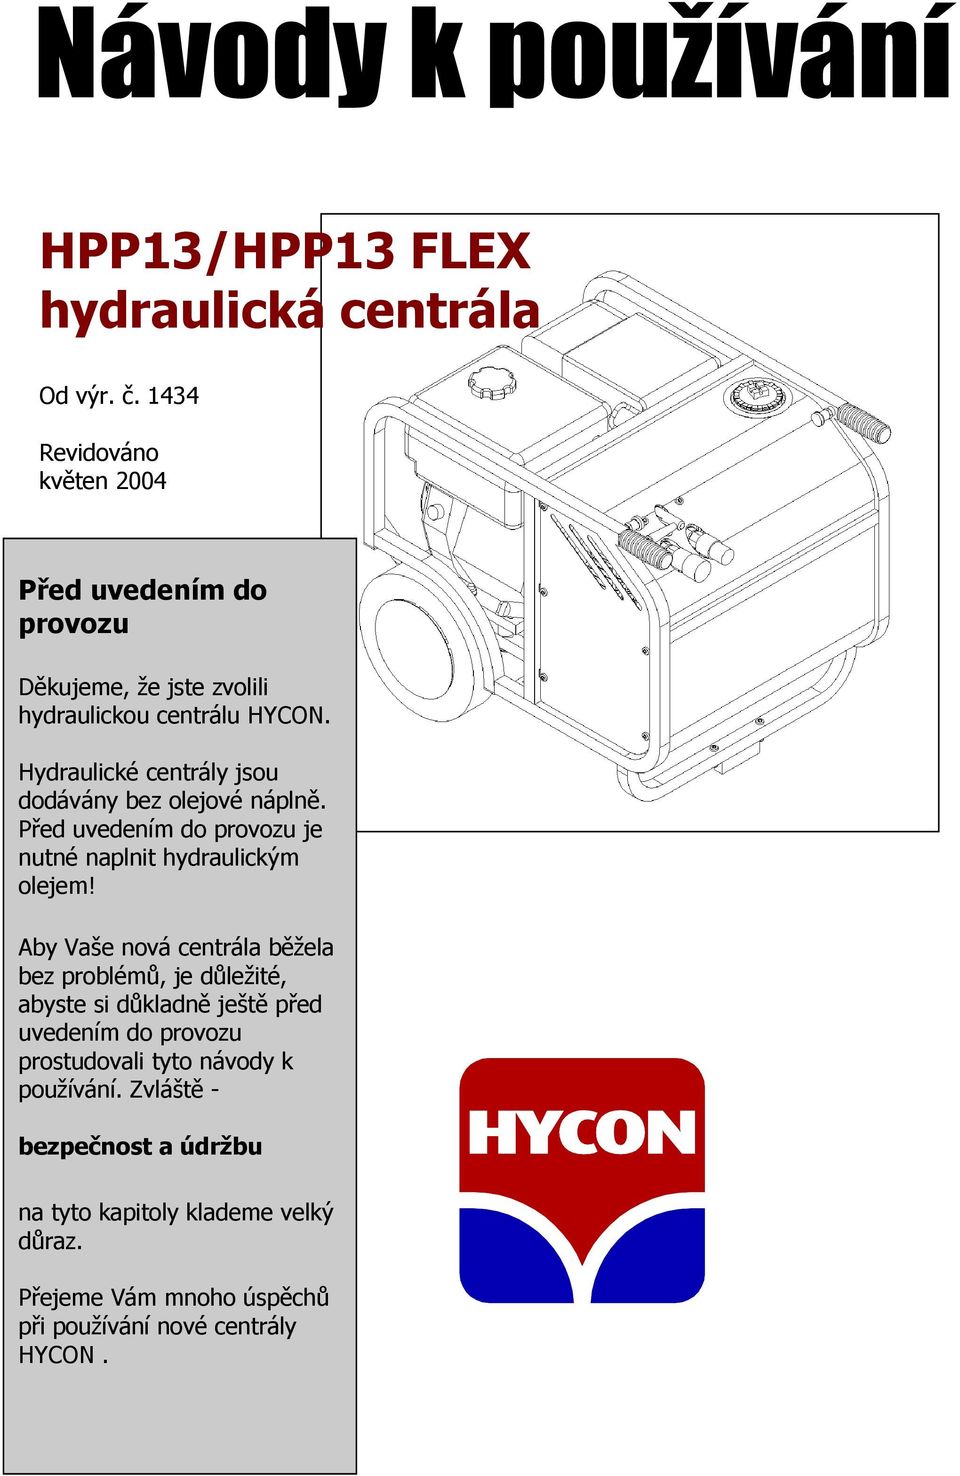 Hydraulické centrály jsou dodávány bez olejové náplně. Před uvedením do provozu je nutné naplnit hydraulickým olejem!